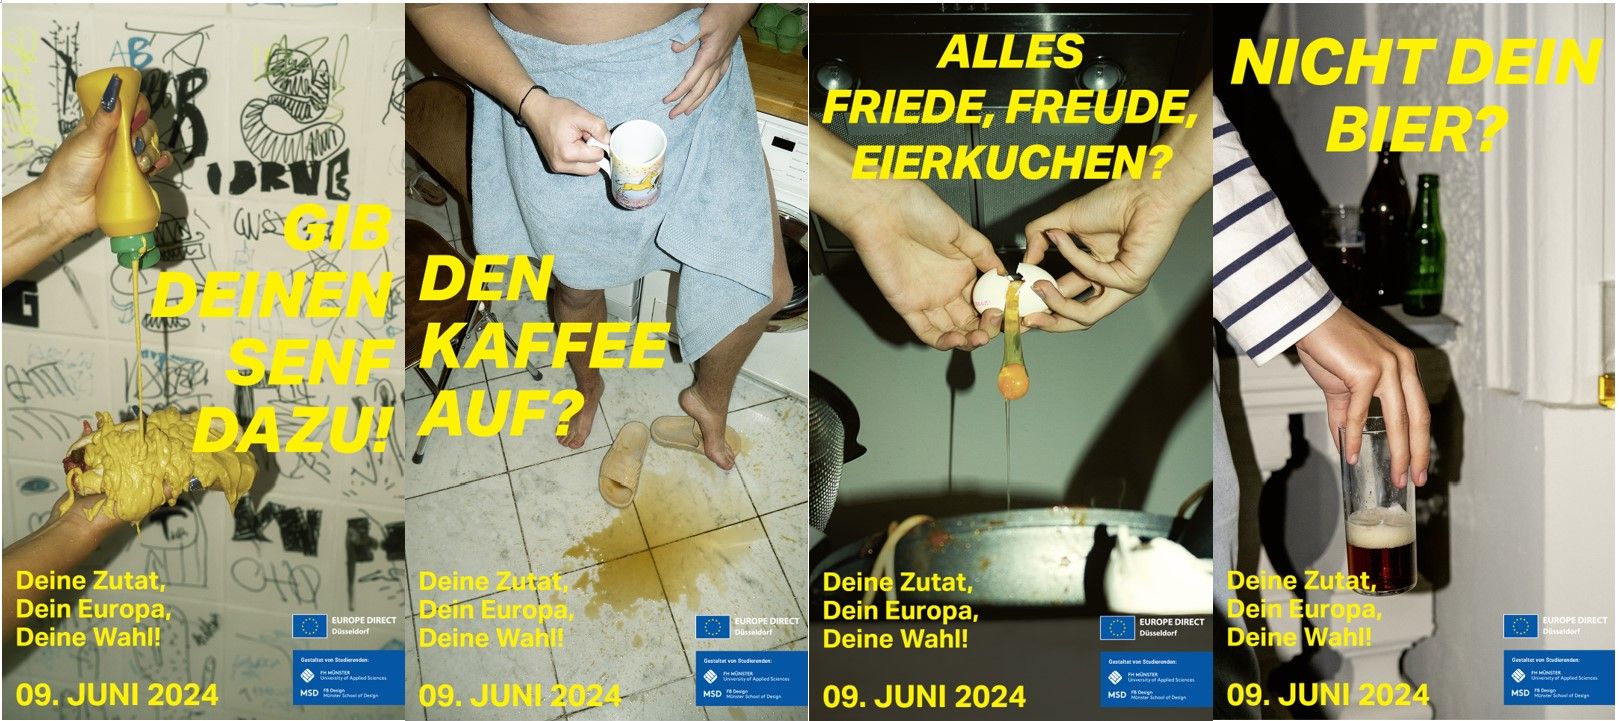 "Gib deinen Senf dazu", "Den Kaffee auf?", "Alles Friede, Freude, Eierkuchen?", "Nicht dein Bier?" © Landeshauptstadt Düsseldorf